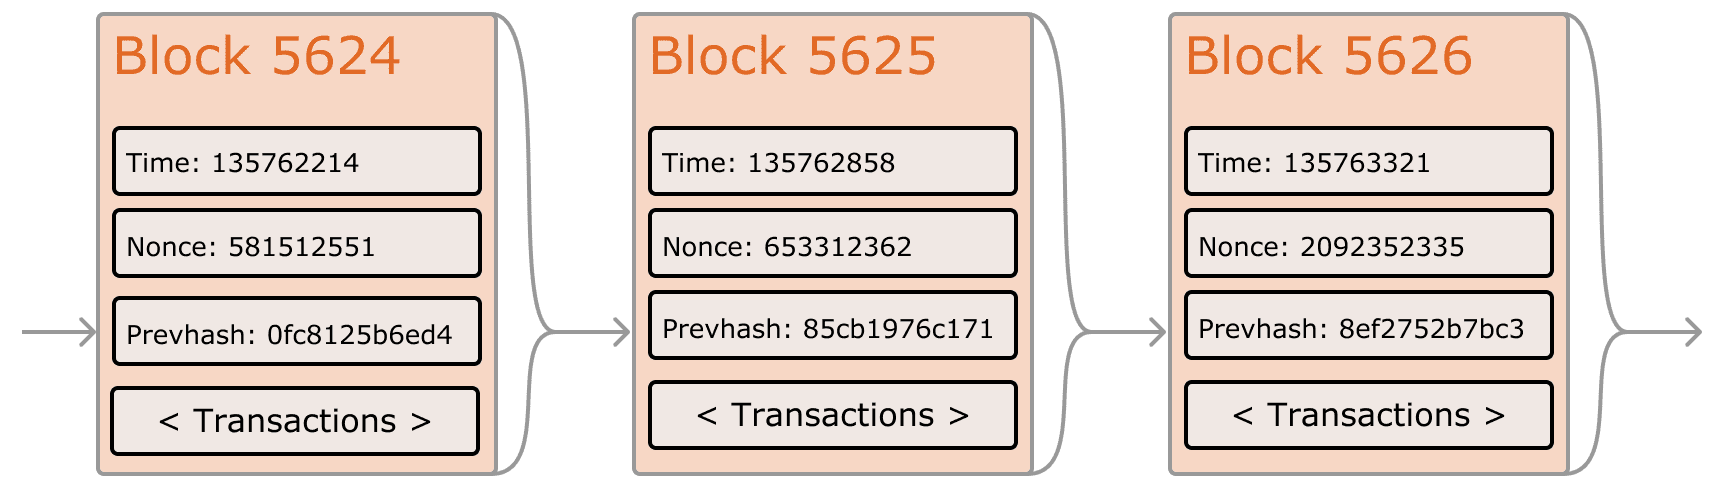 Ethereum Blockchain Transactions Diagram